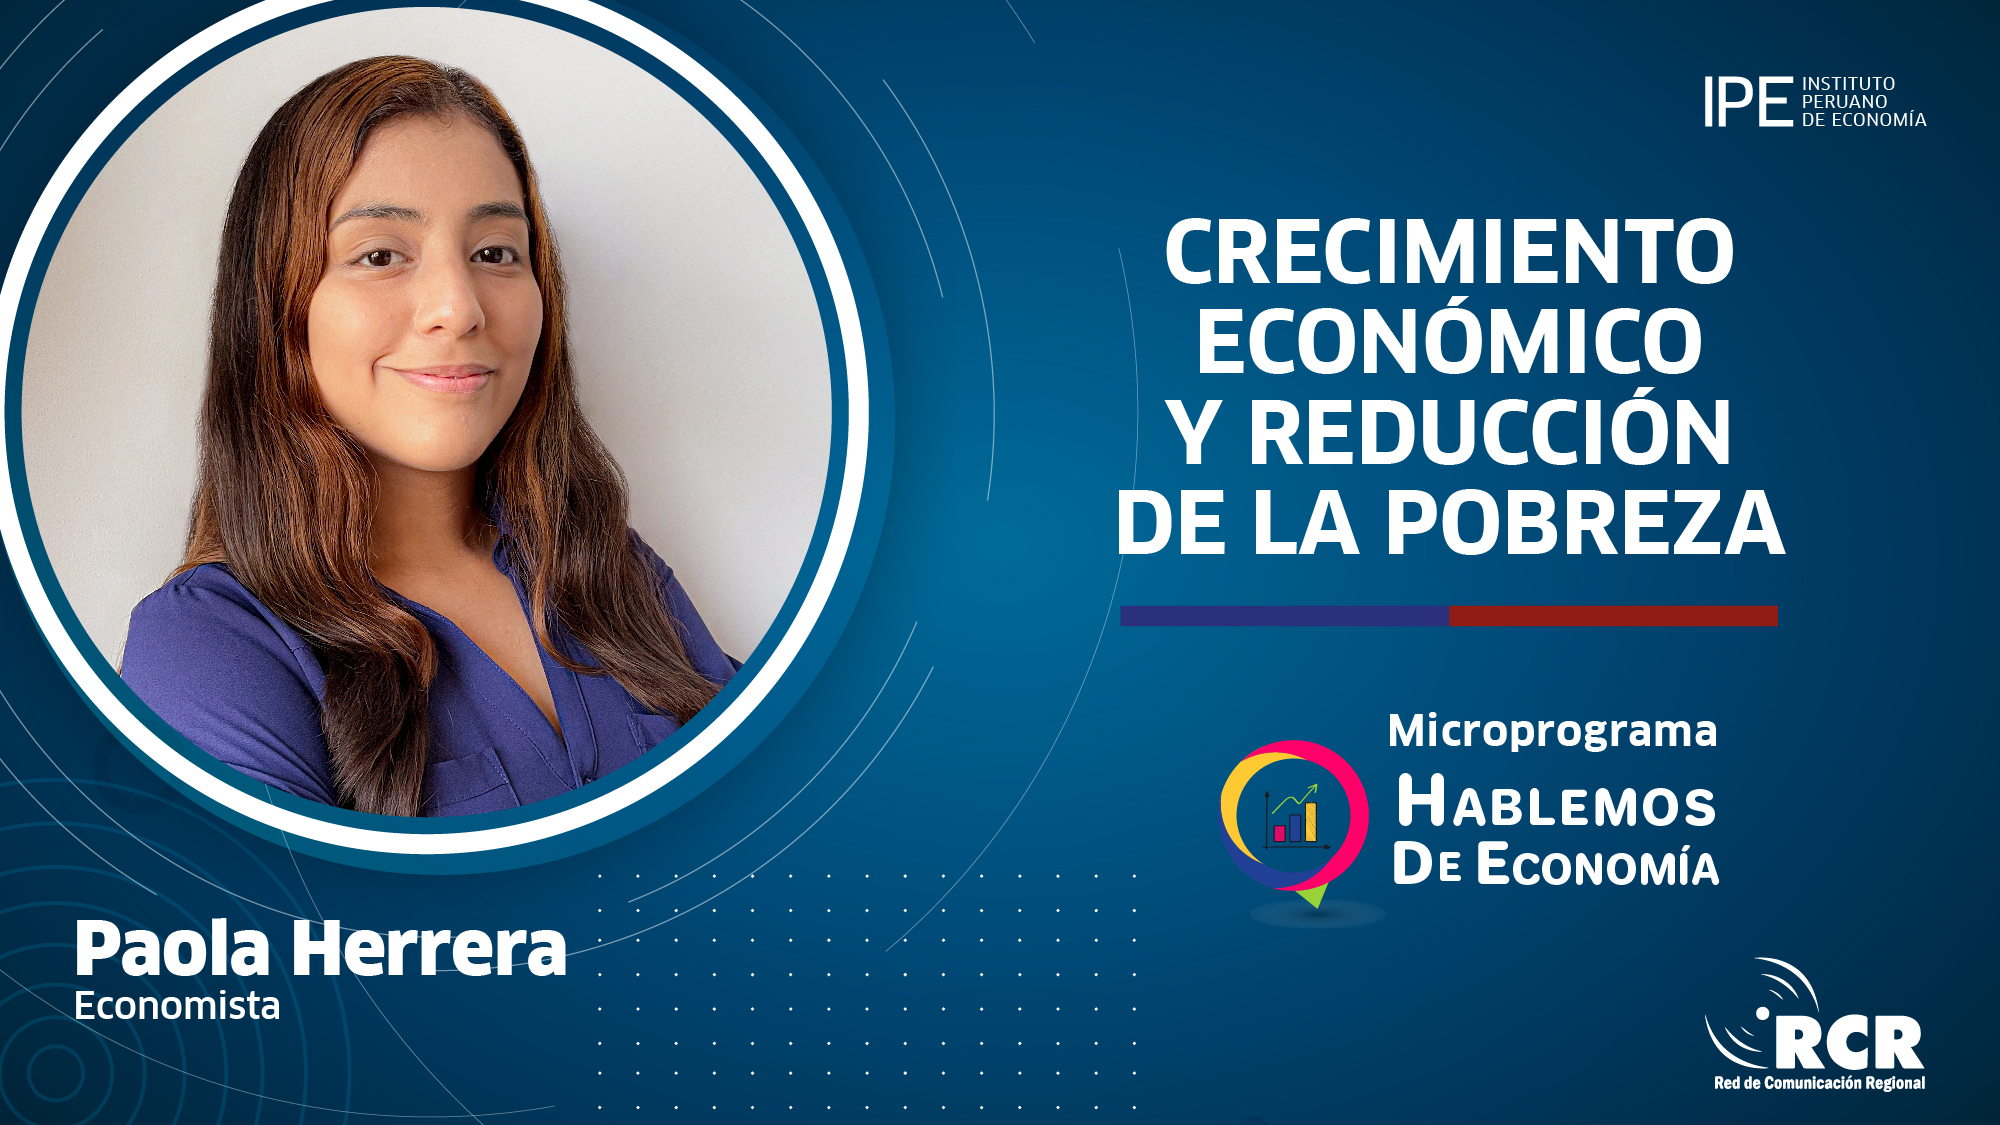 reducción de la pobreza, Paola Herrera, Red de Comunicación Regional (RCR), hablemos de economía, pobreza, crecimiento